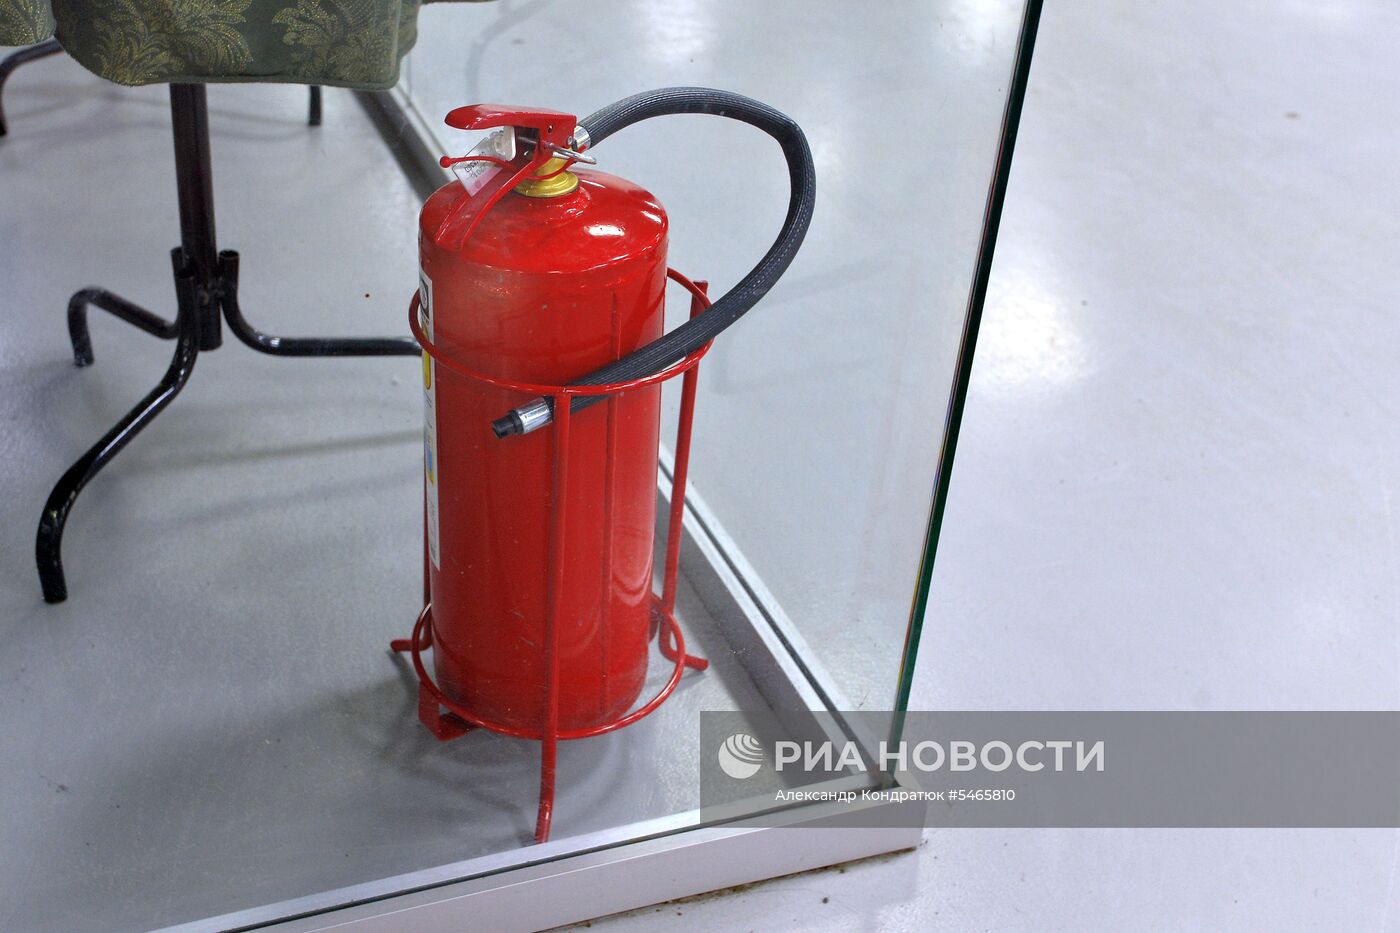 Проверка пожарной безопасности в ТЦ "Кольцо"  в Челябинске